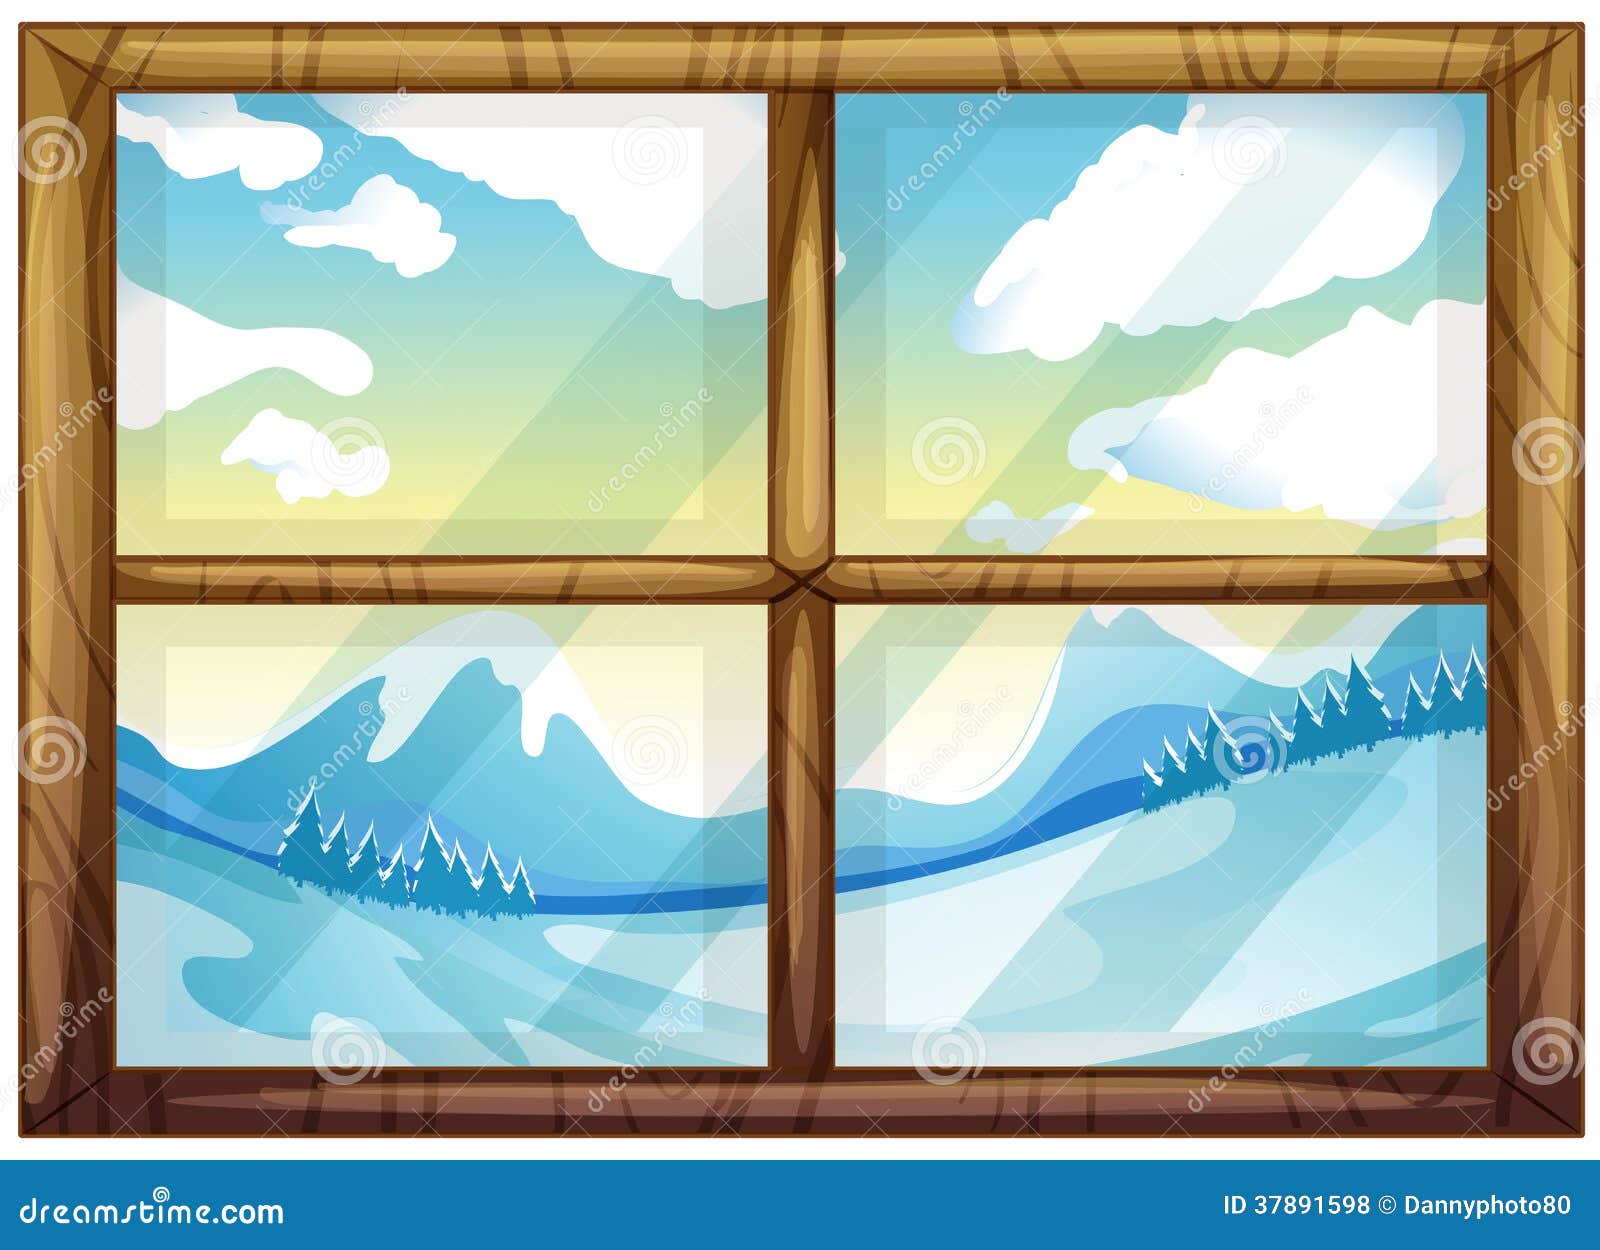 冬天的看法从窗口的向量例证 插画包括有